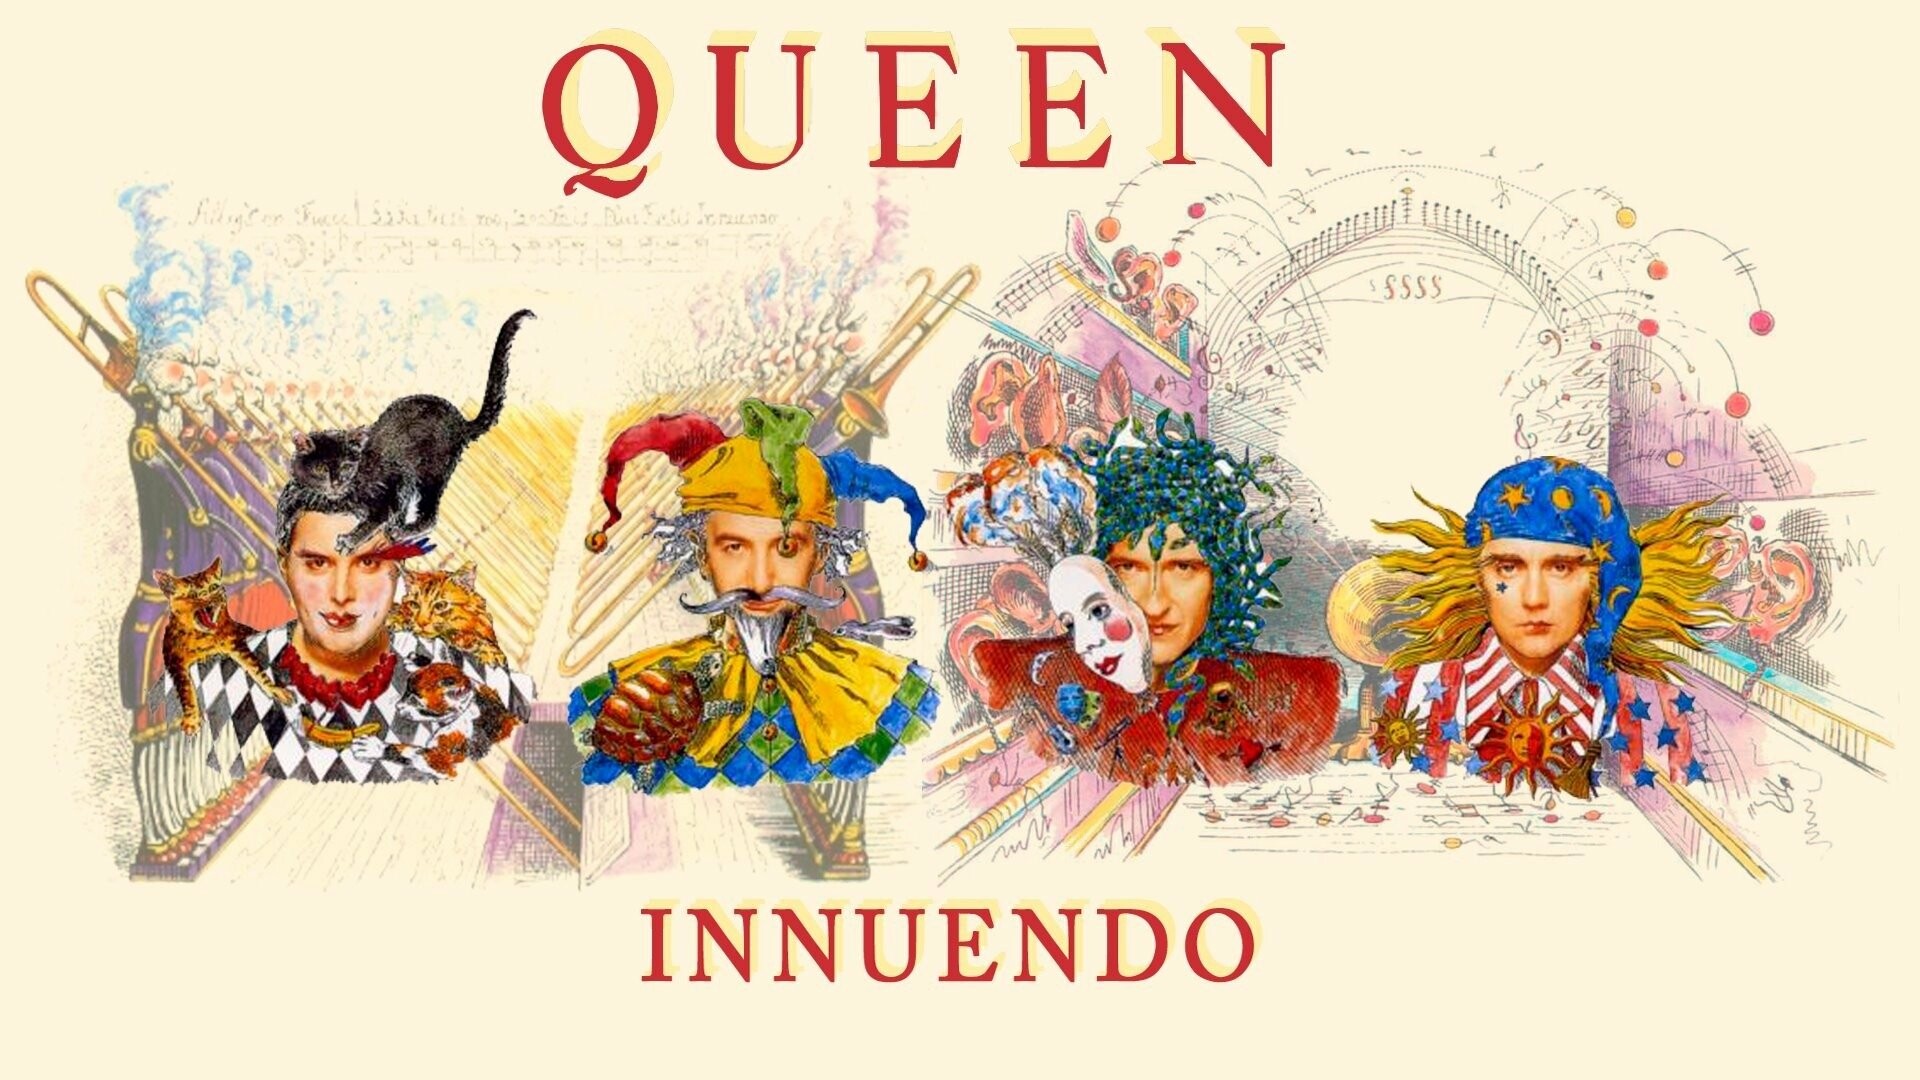 Queen stage presence, Queen fan community, Queen live performances, Rock royalty, 1920x1080 Full HD Desktop